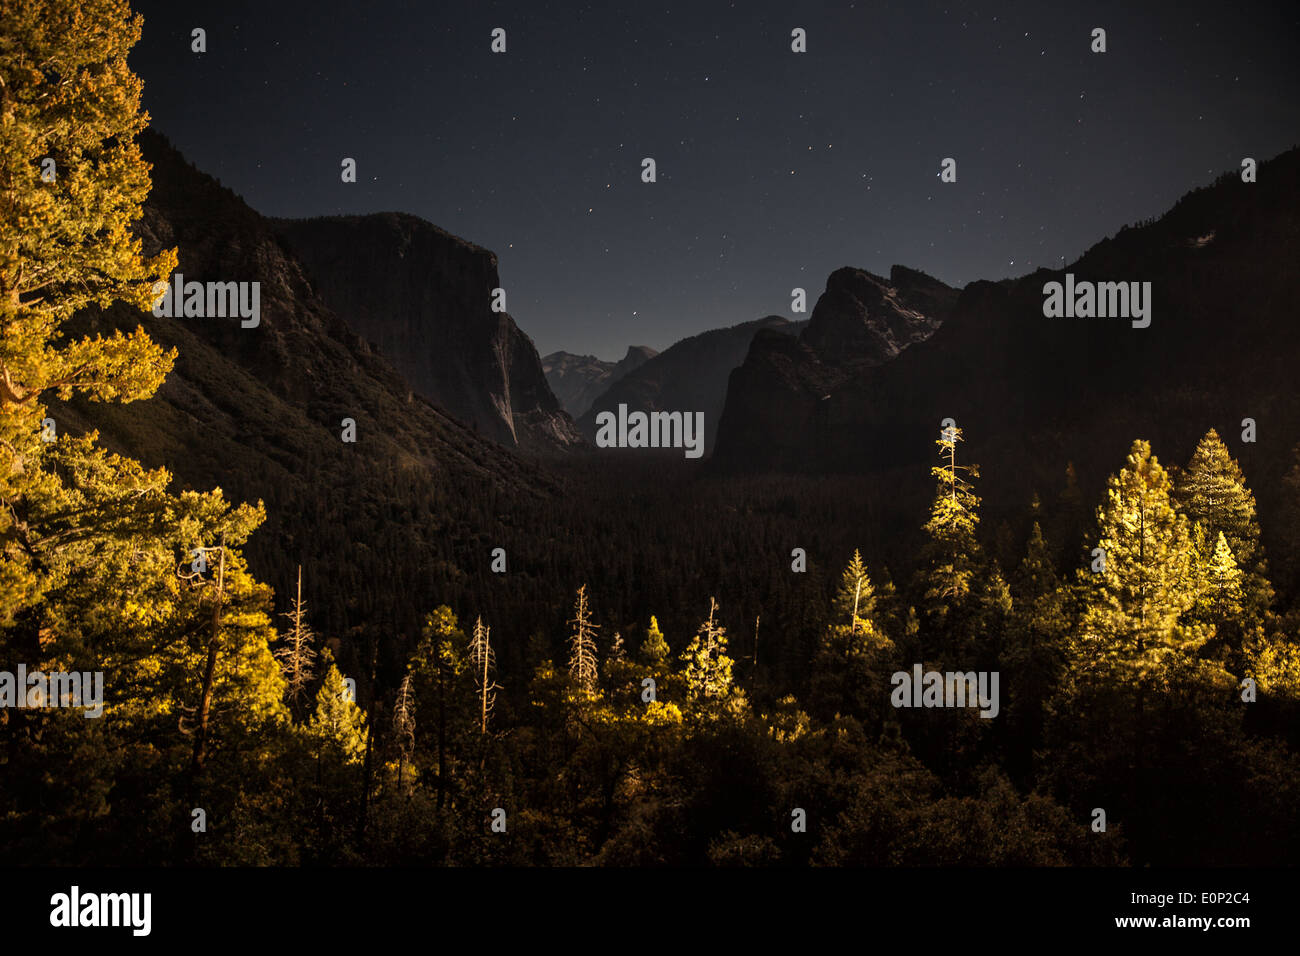 Eine Nacht-Aufnahme zeigt eine Ansicht des Yosemite National Park Stockfoto